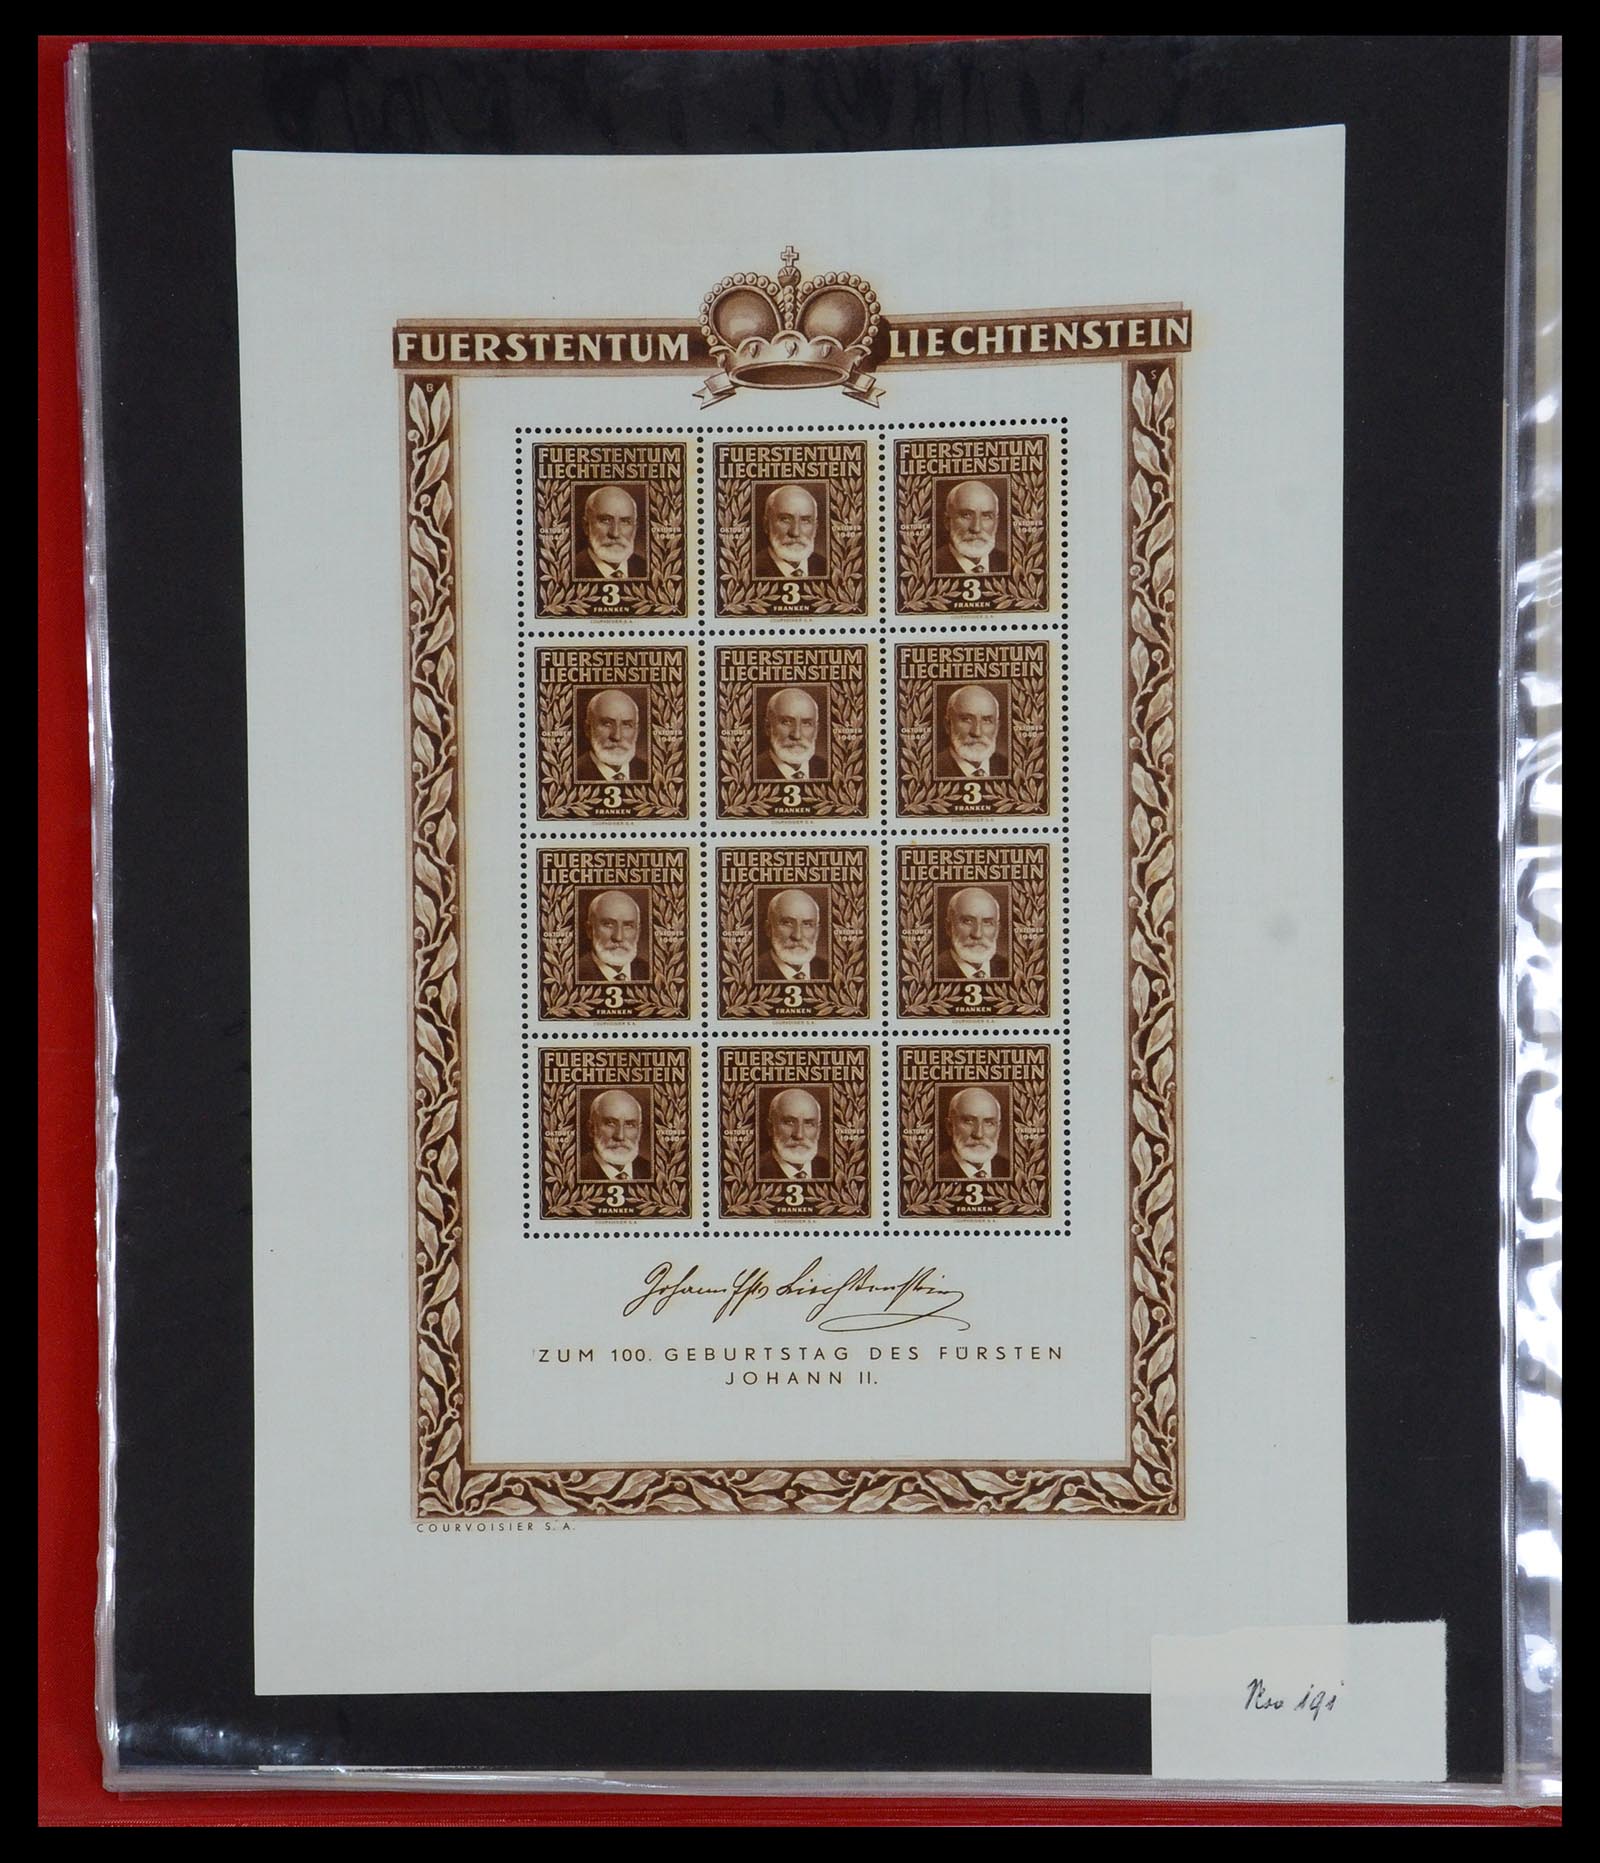 36280 014 - Stamp collection 36280 Liechtenstein souvenir sheets and sheetlets 1934-